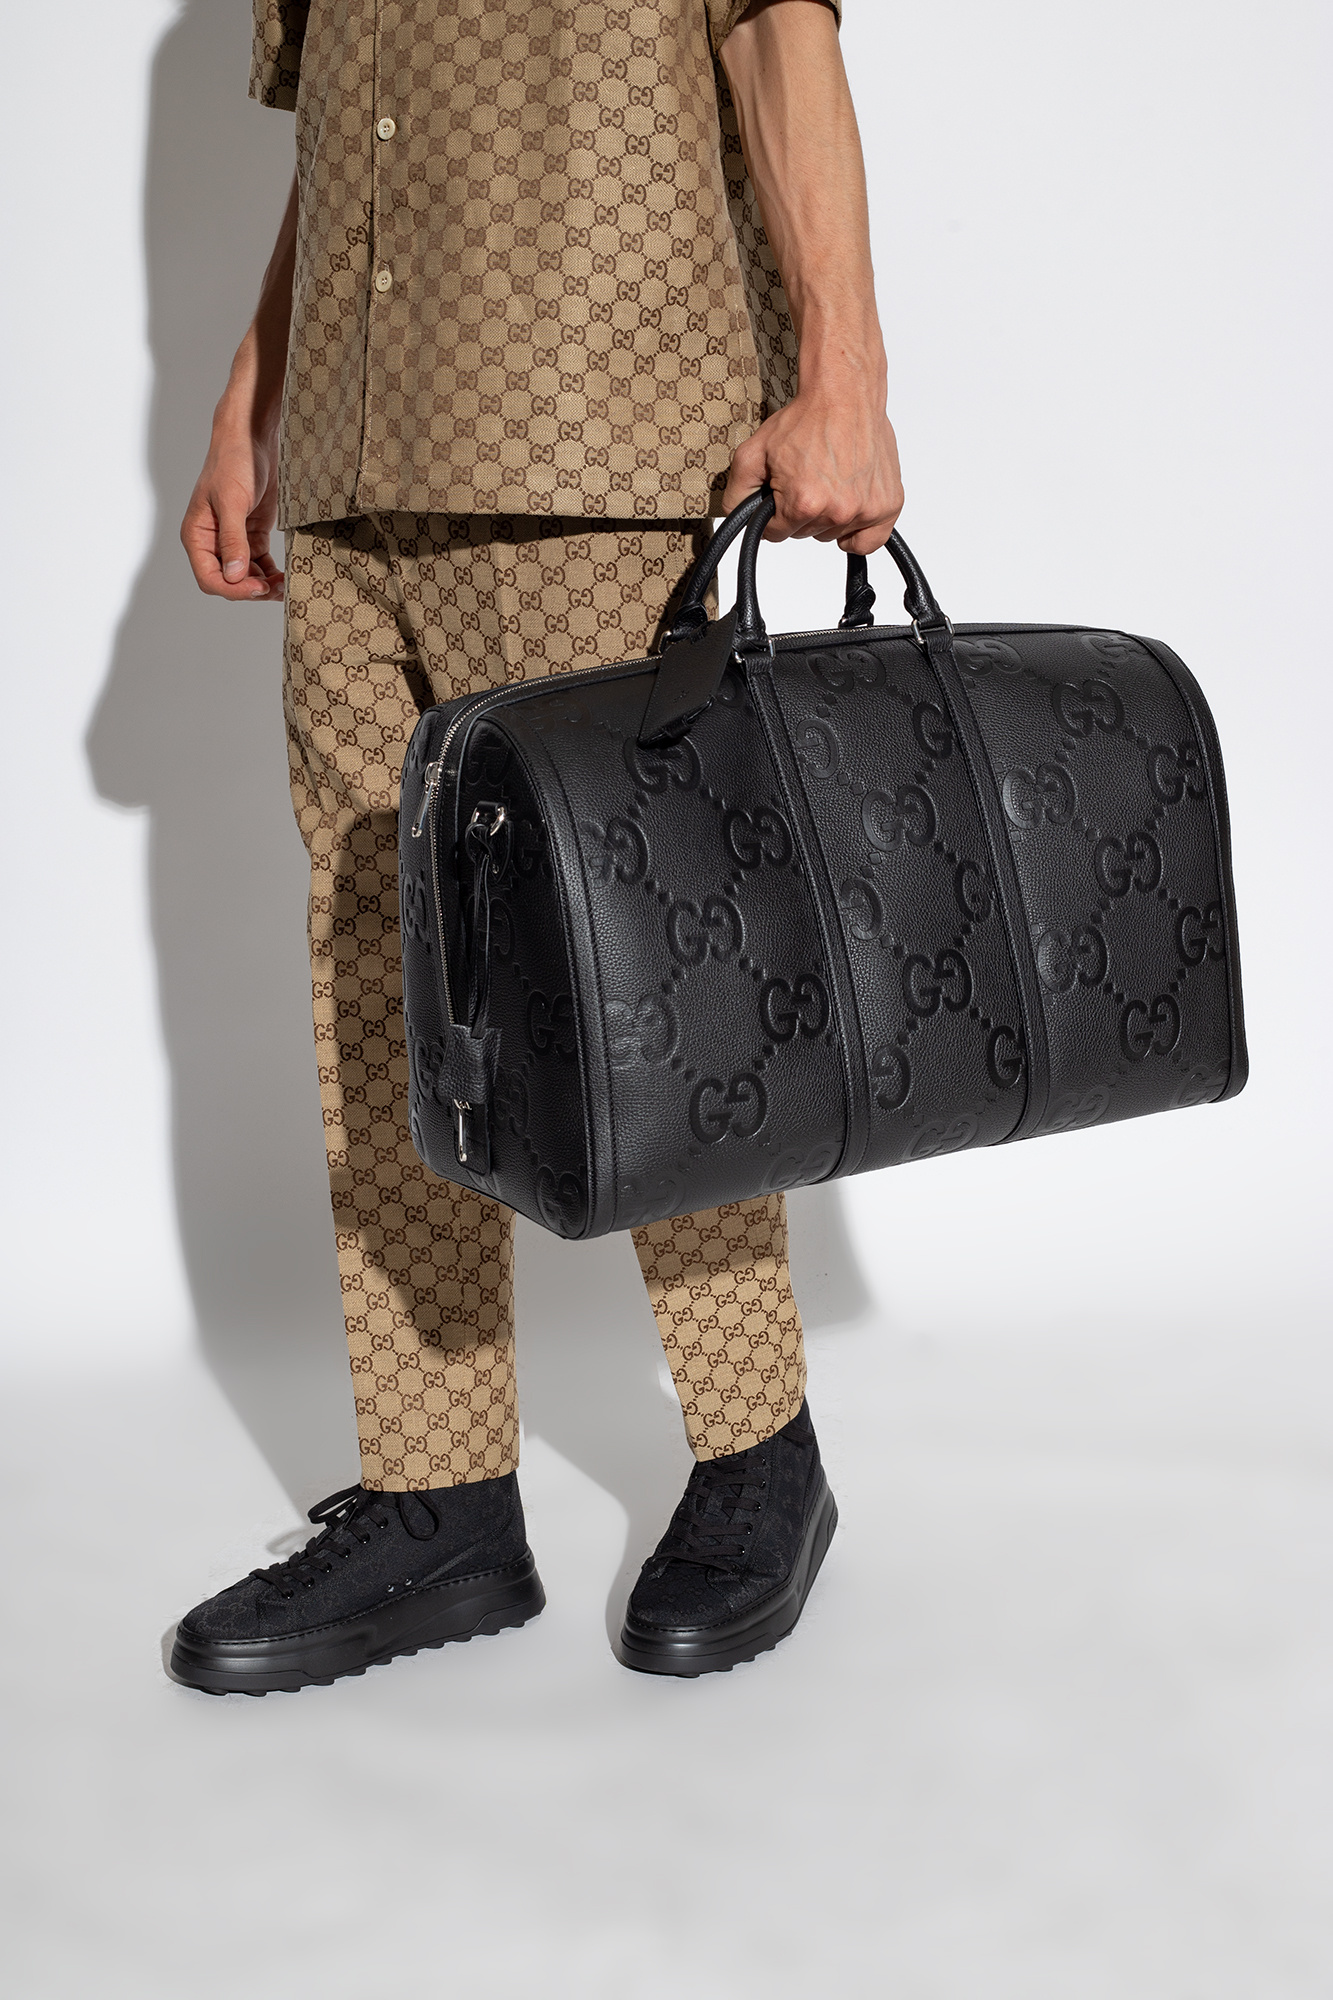 Gucci GG embossed duffle bag black | 3D model